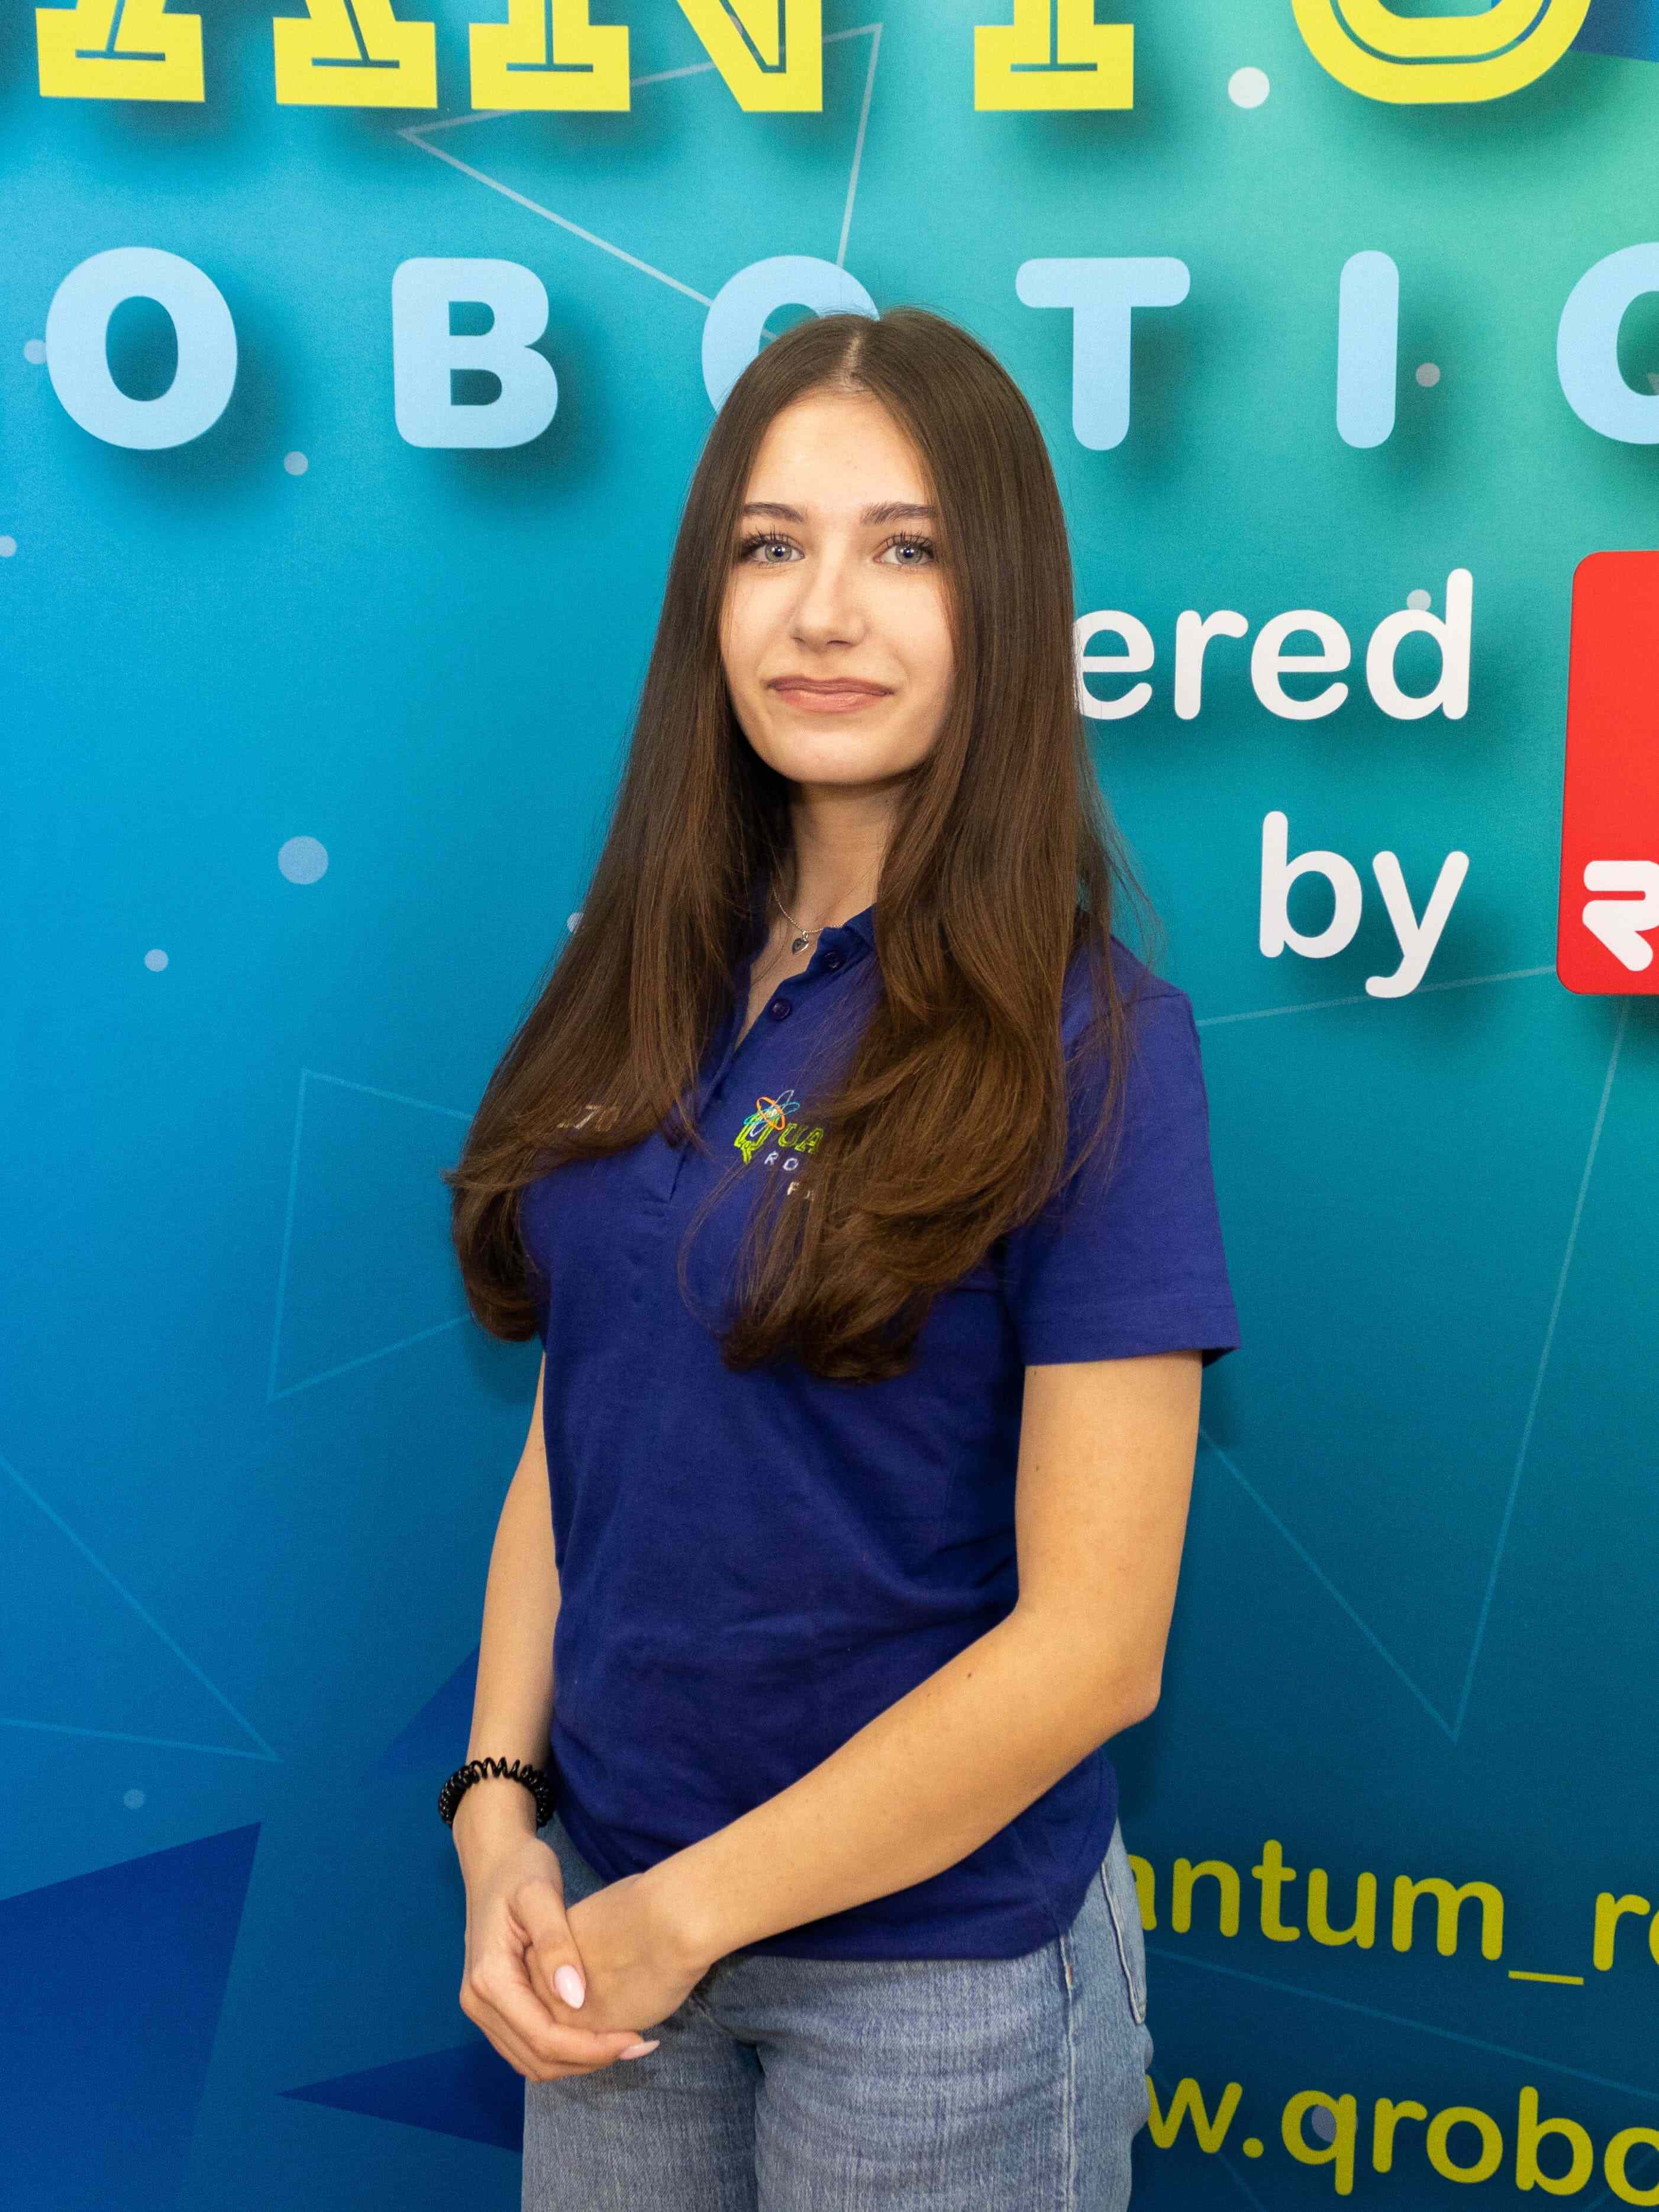 Quantum-Robotics-FTC-FIRST-competiton-team-members-Irina-Pavel